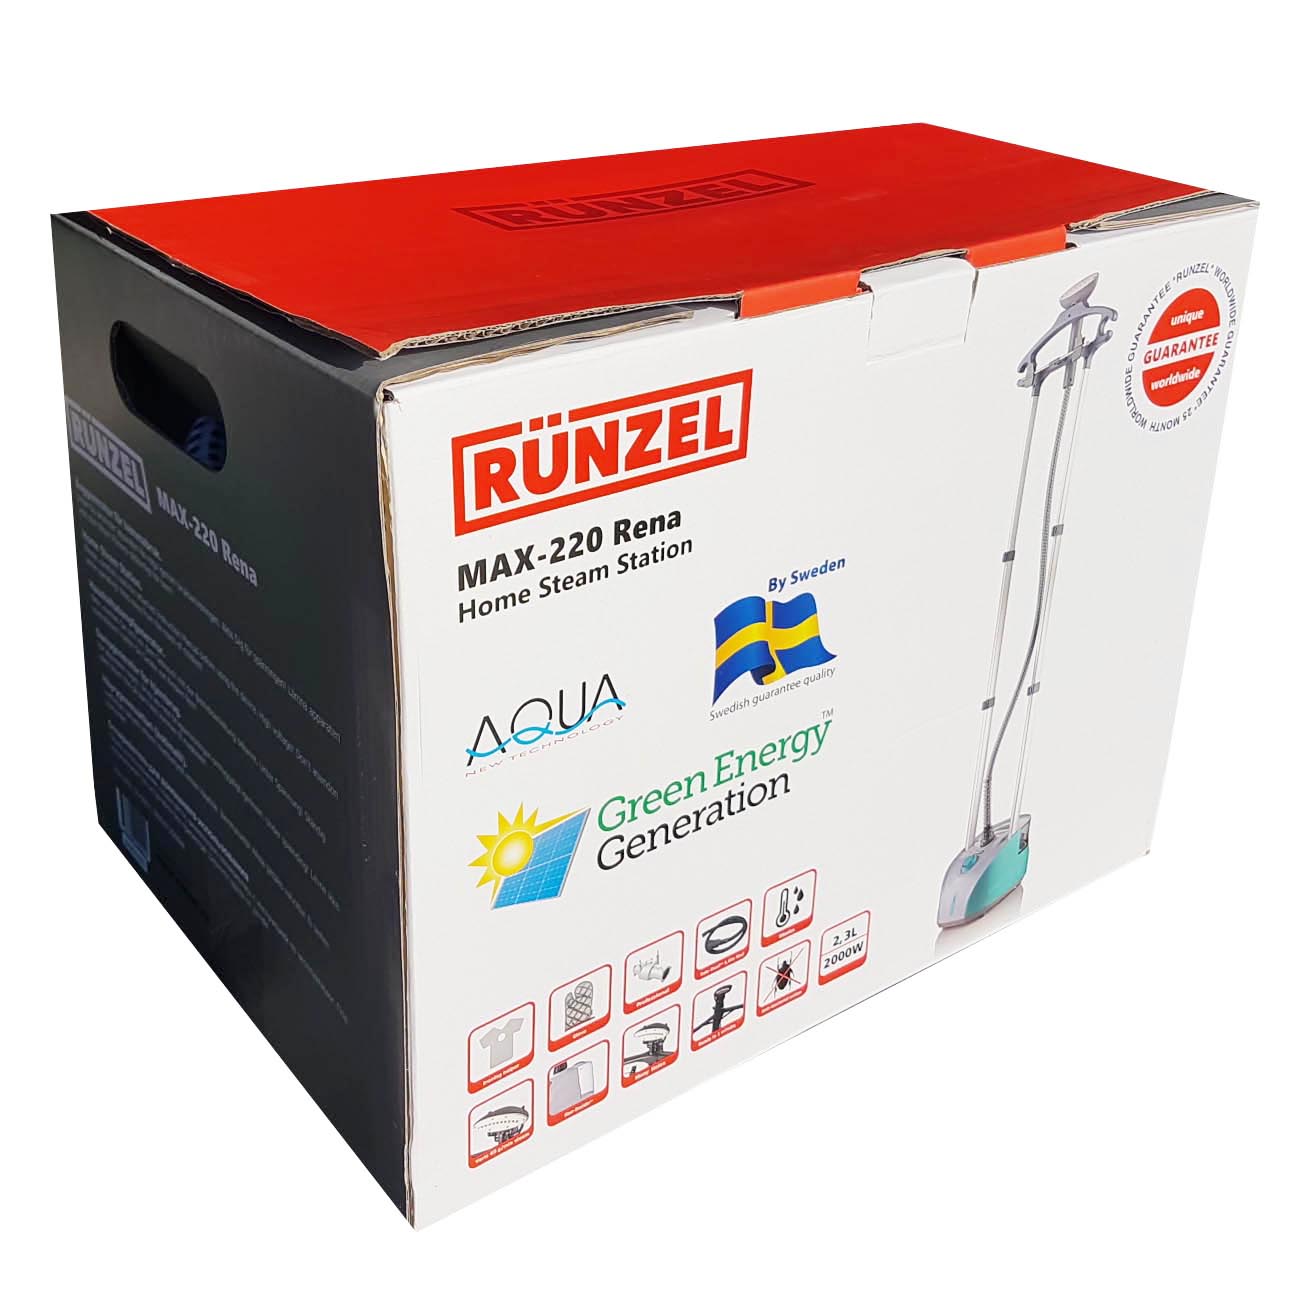 Отпариватель Runzel Max-220 Rena цвет бело-оранжевый - упаковка, коробка